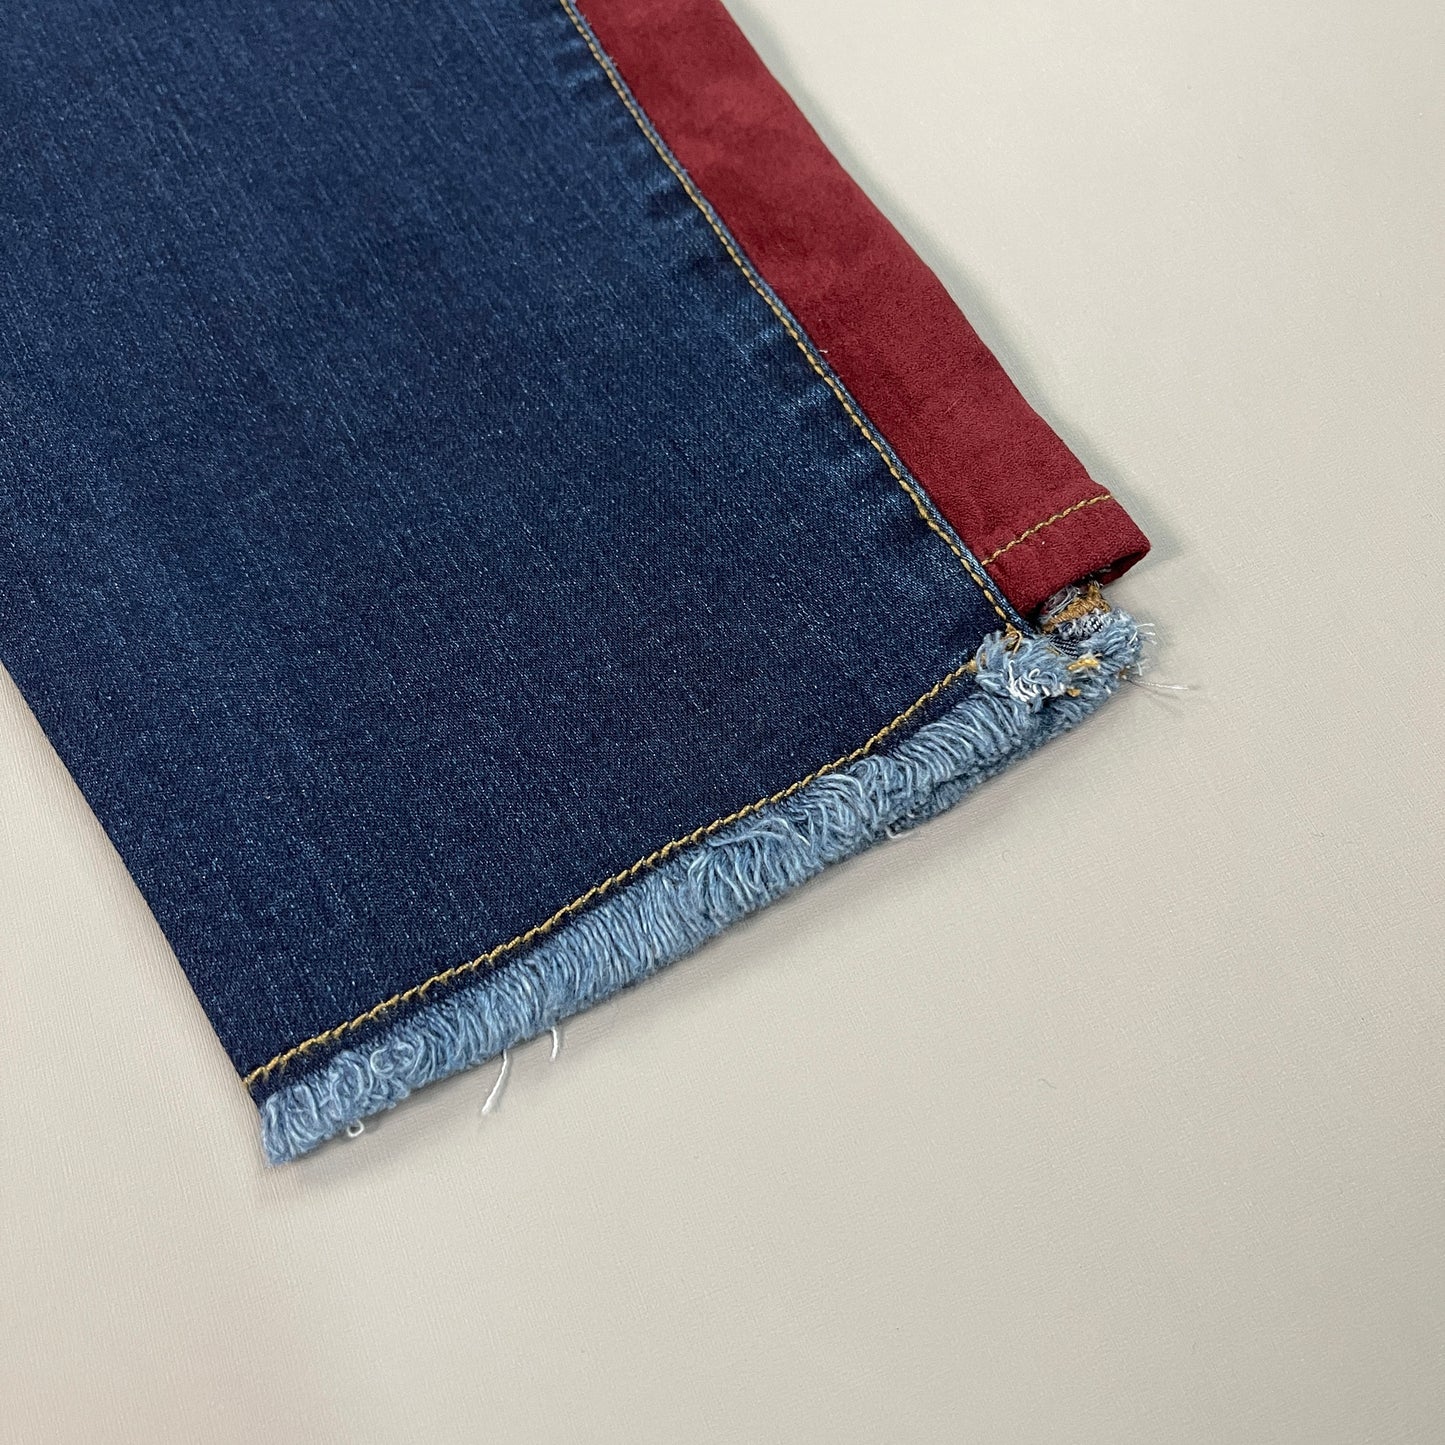 CLINTON KELLY Frayed Hem Jeans Women's Sz 10 Regular Dark Wash, Maroon Striped Side(New)